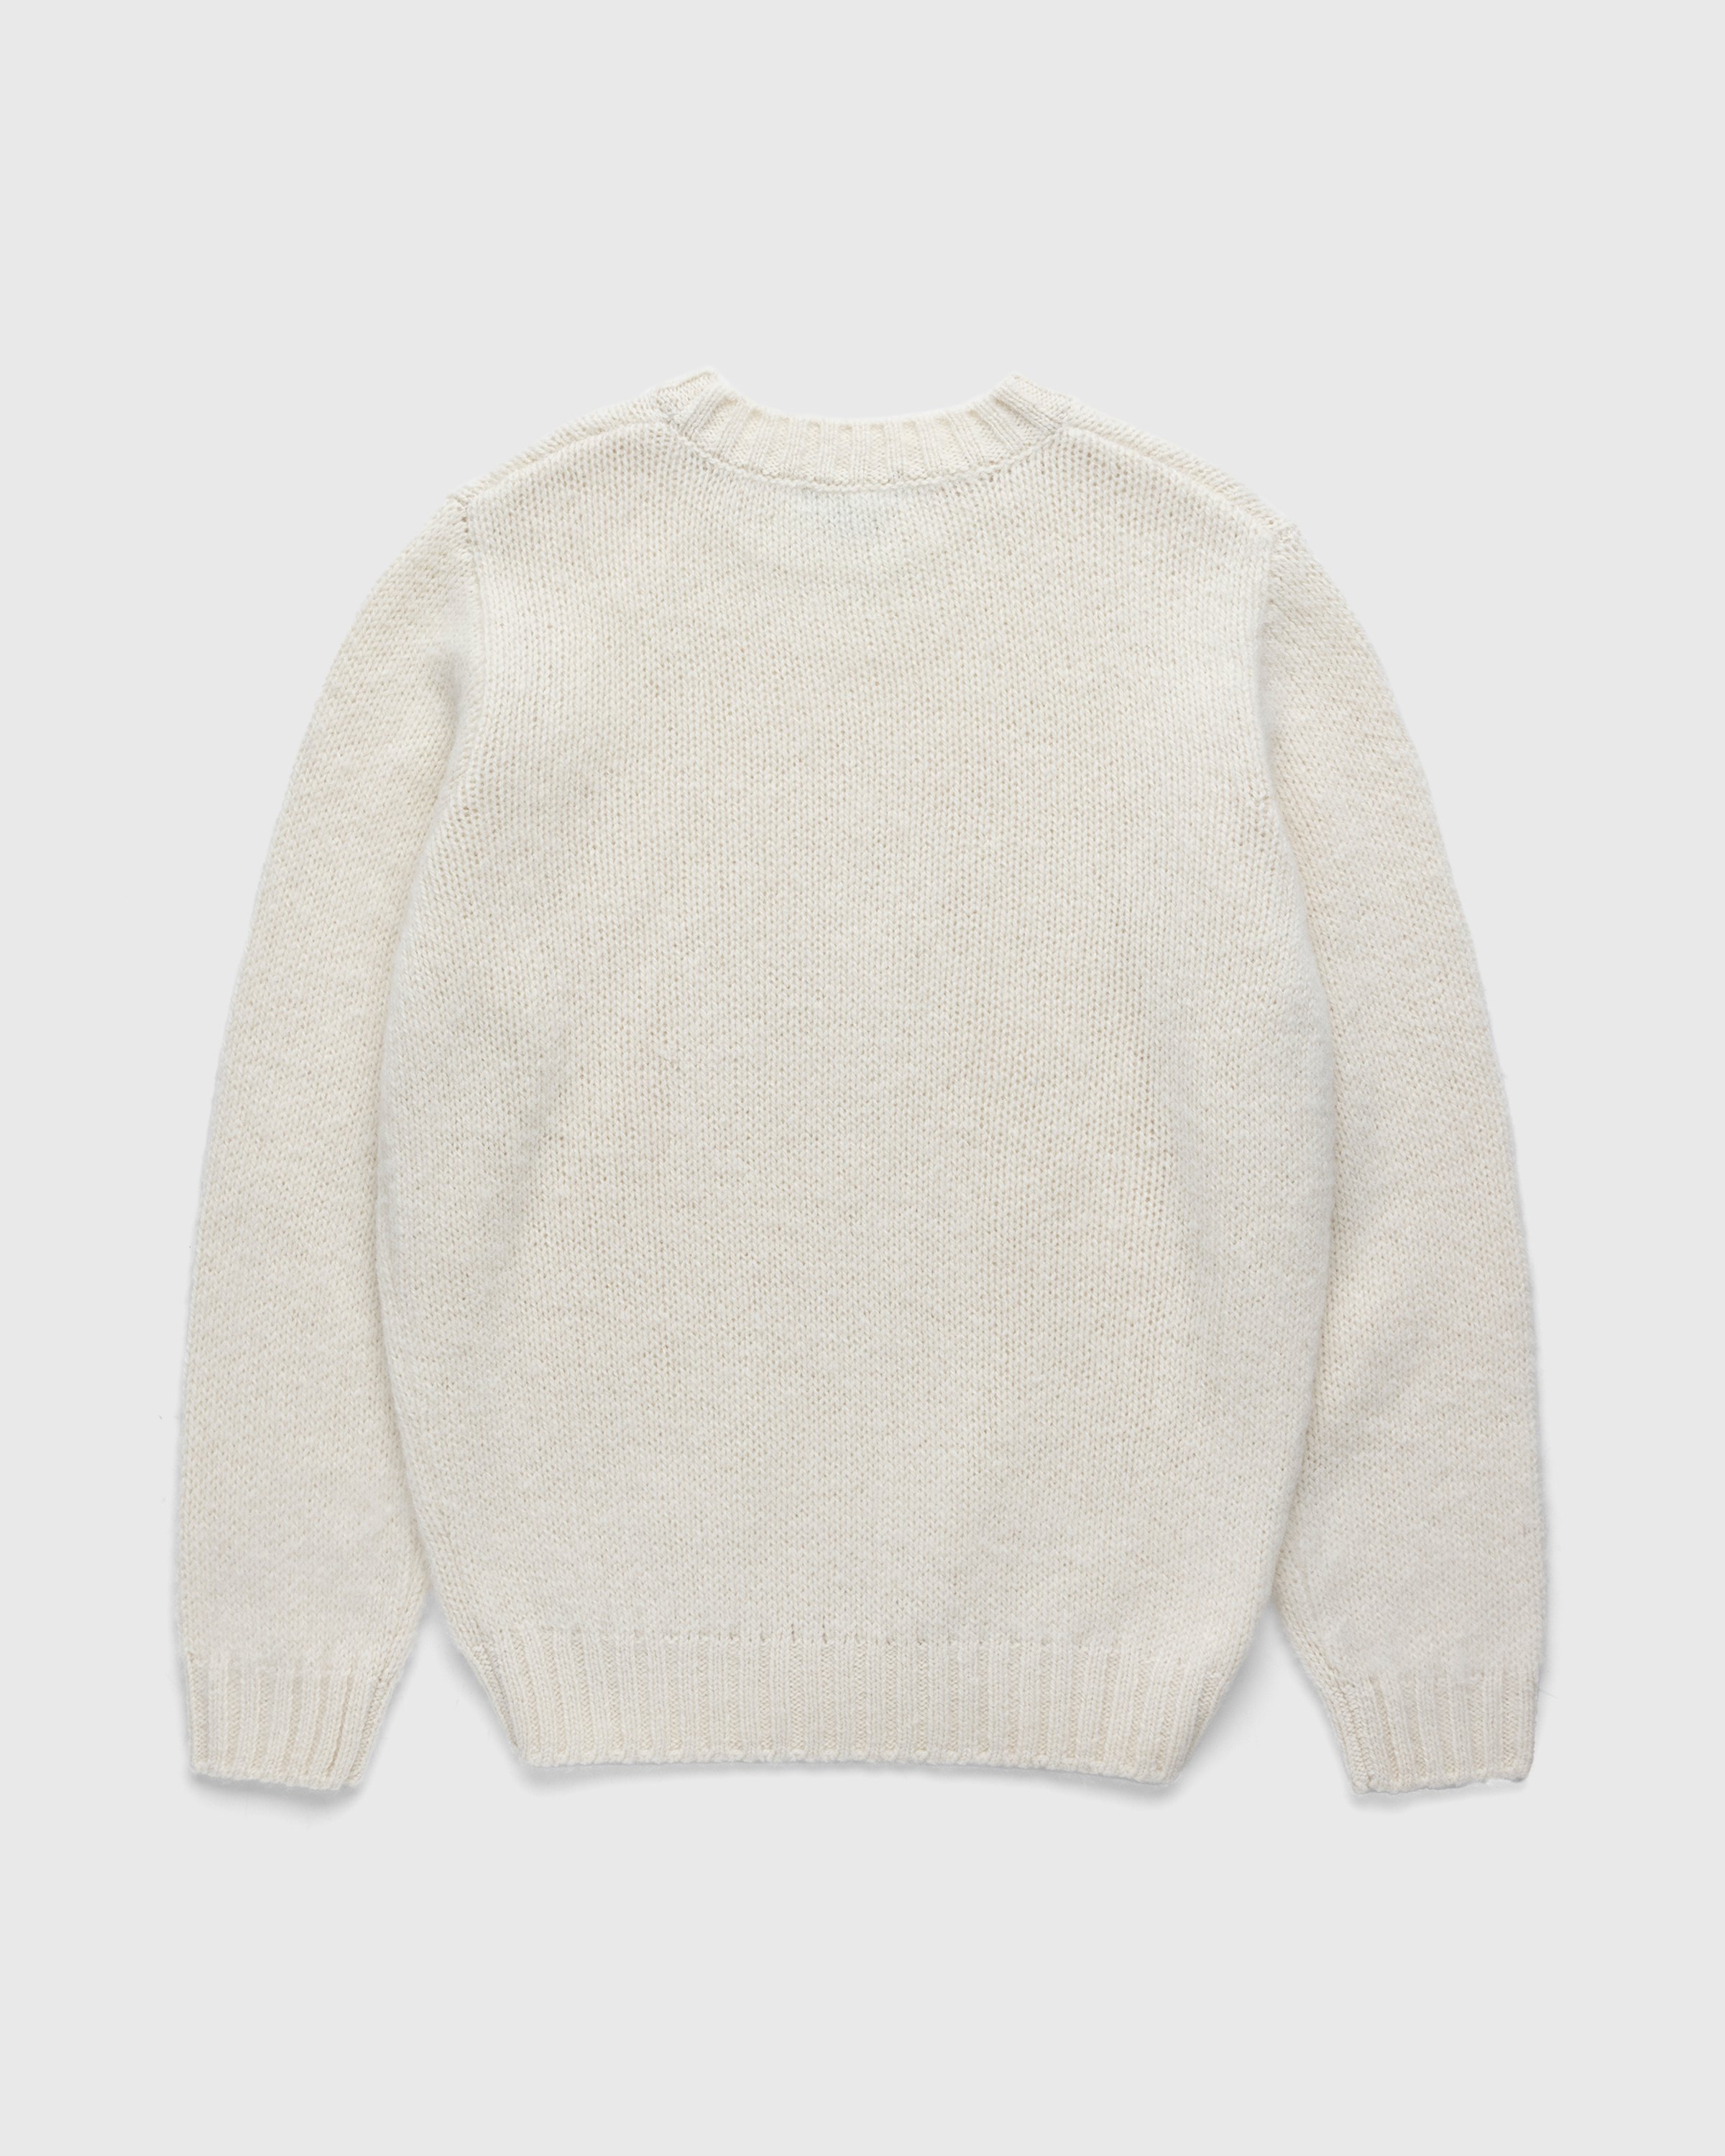 A.P.C. x Jean Touitou - Jim Sweater Off White - Clothing - Offwhite - Image 2